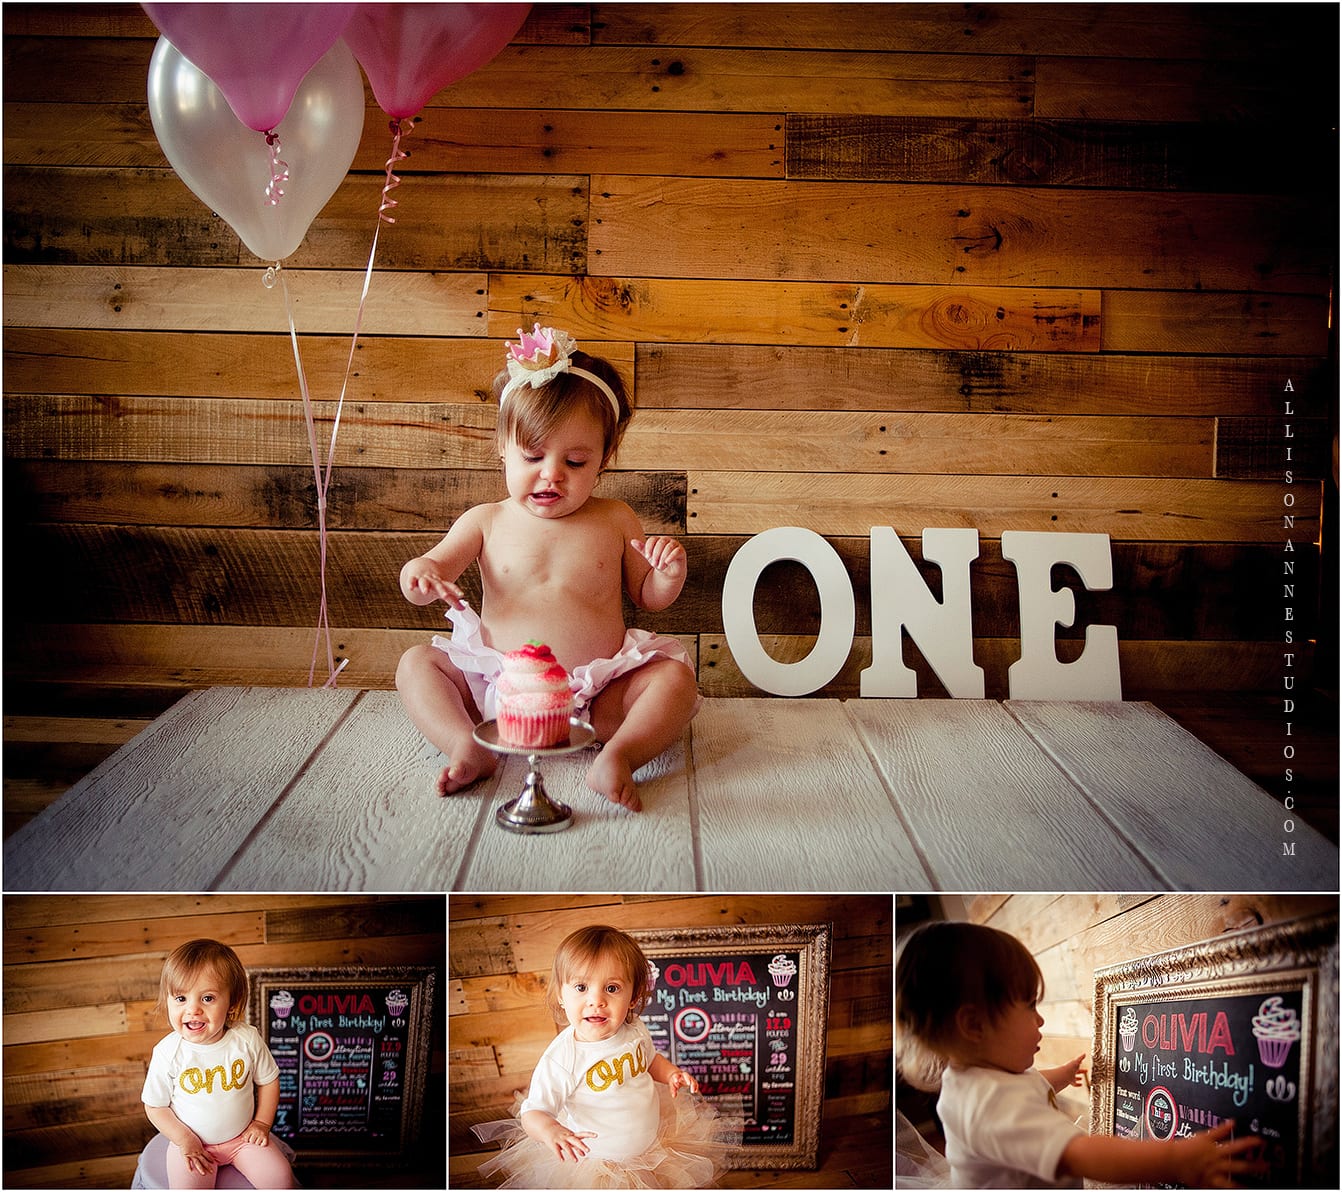 First, cupcake, Olivia, happy birthday, AllisonAnne Studios, best kid photographer, South jersey, Hammonton, chalkboard, Big brown eyes, Allison Gallagher